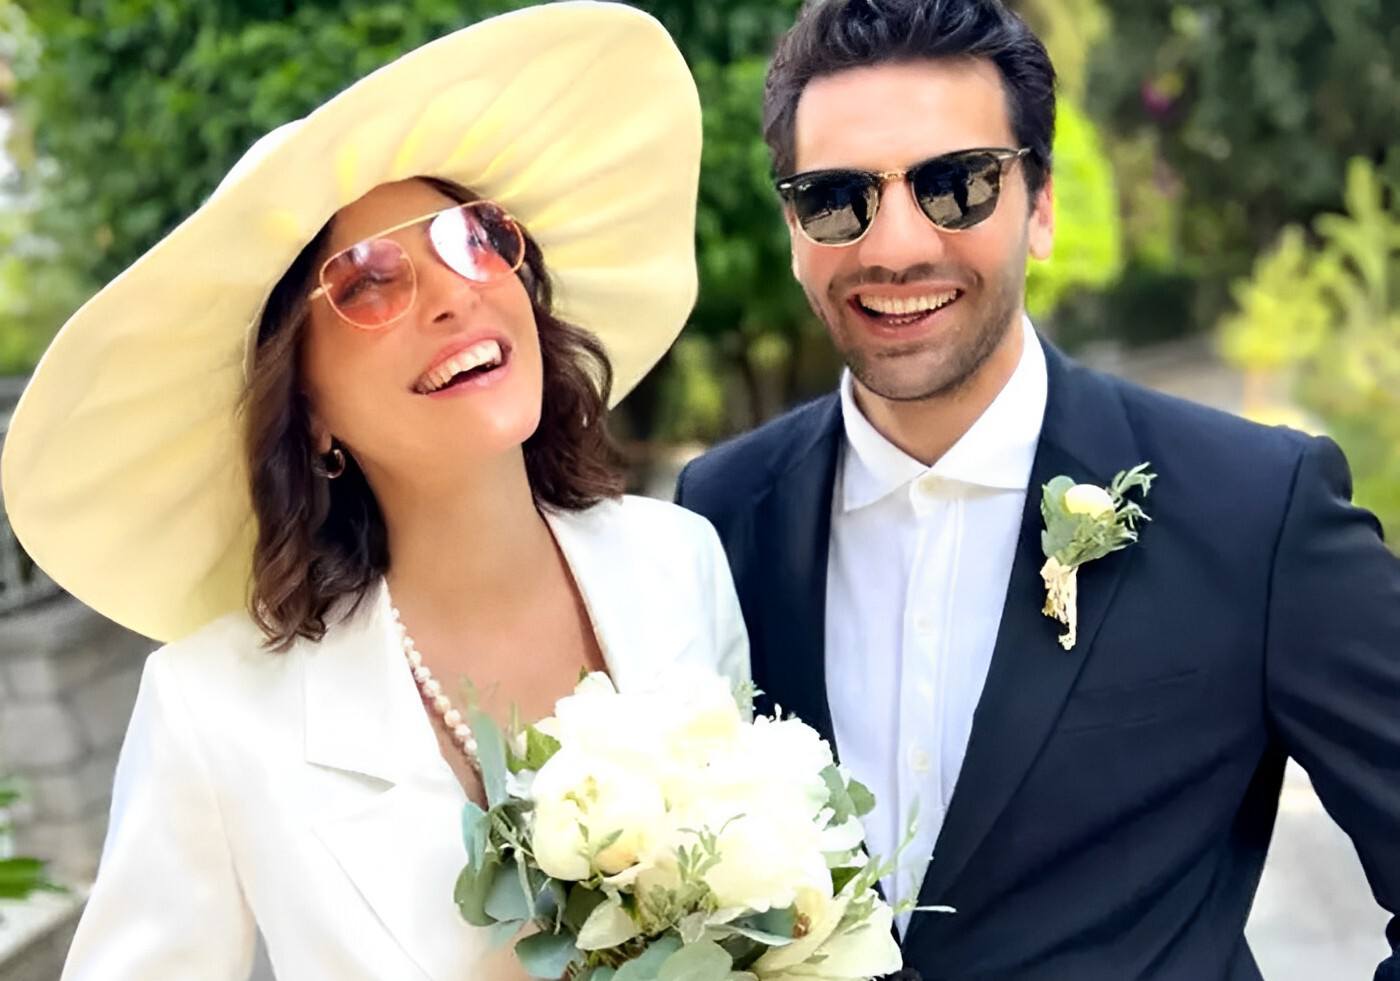 Kaan Urgancıoğlu y Burcu Denizer se casaron en Grecia